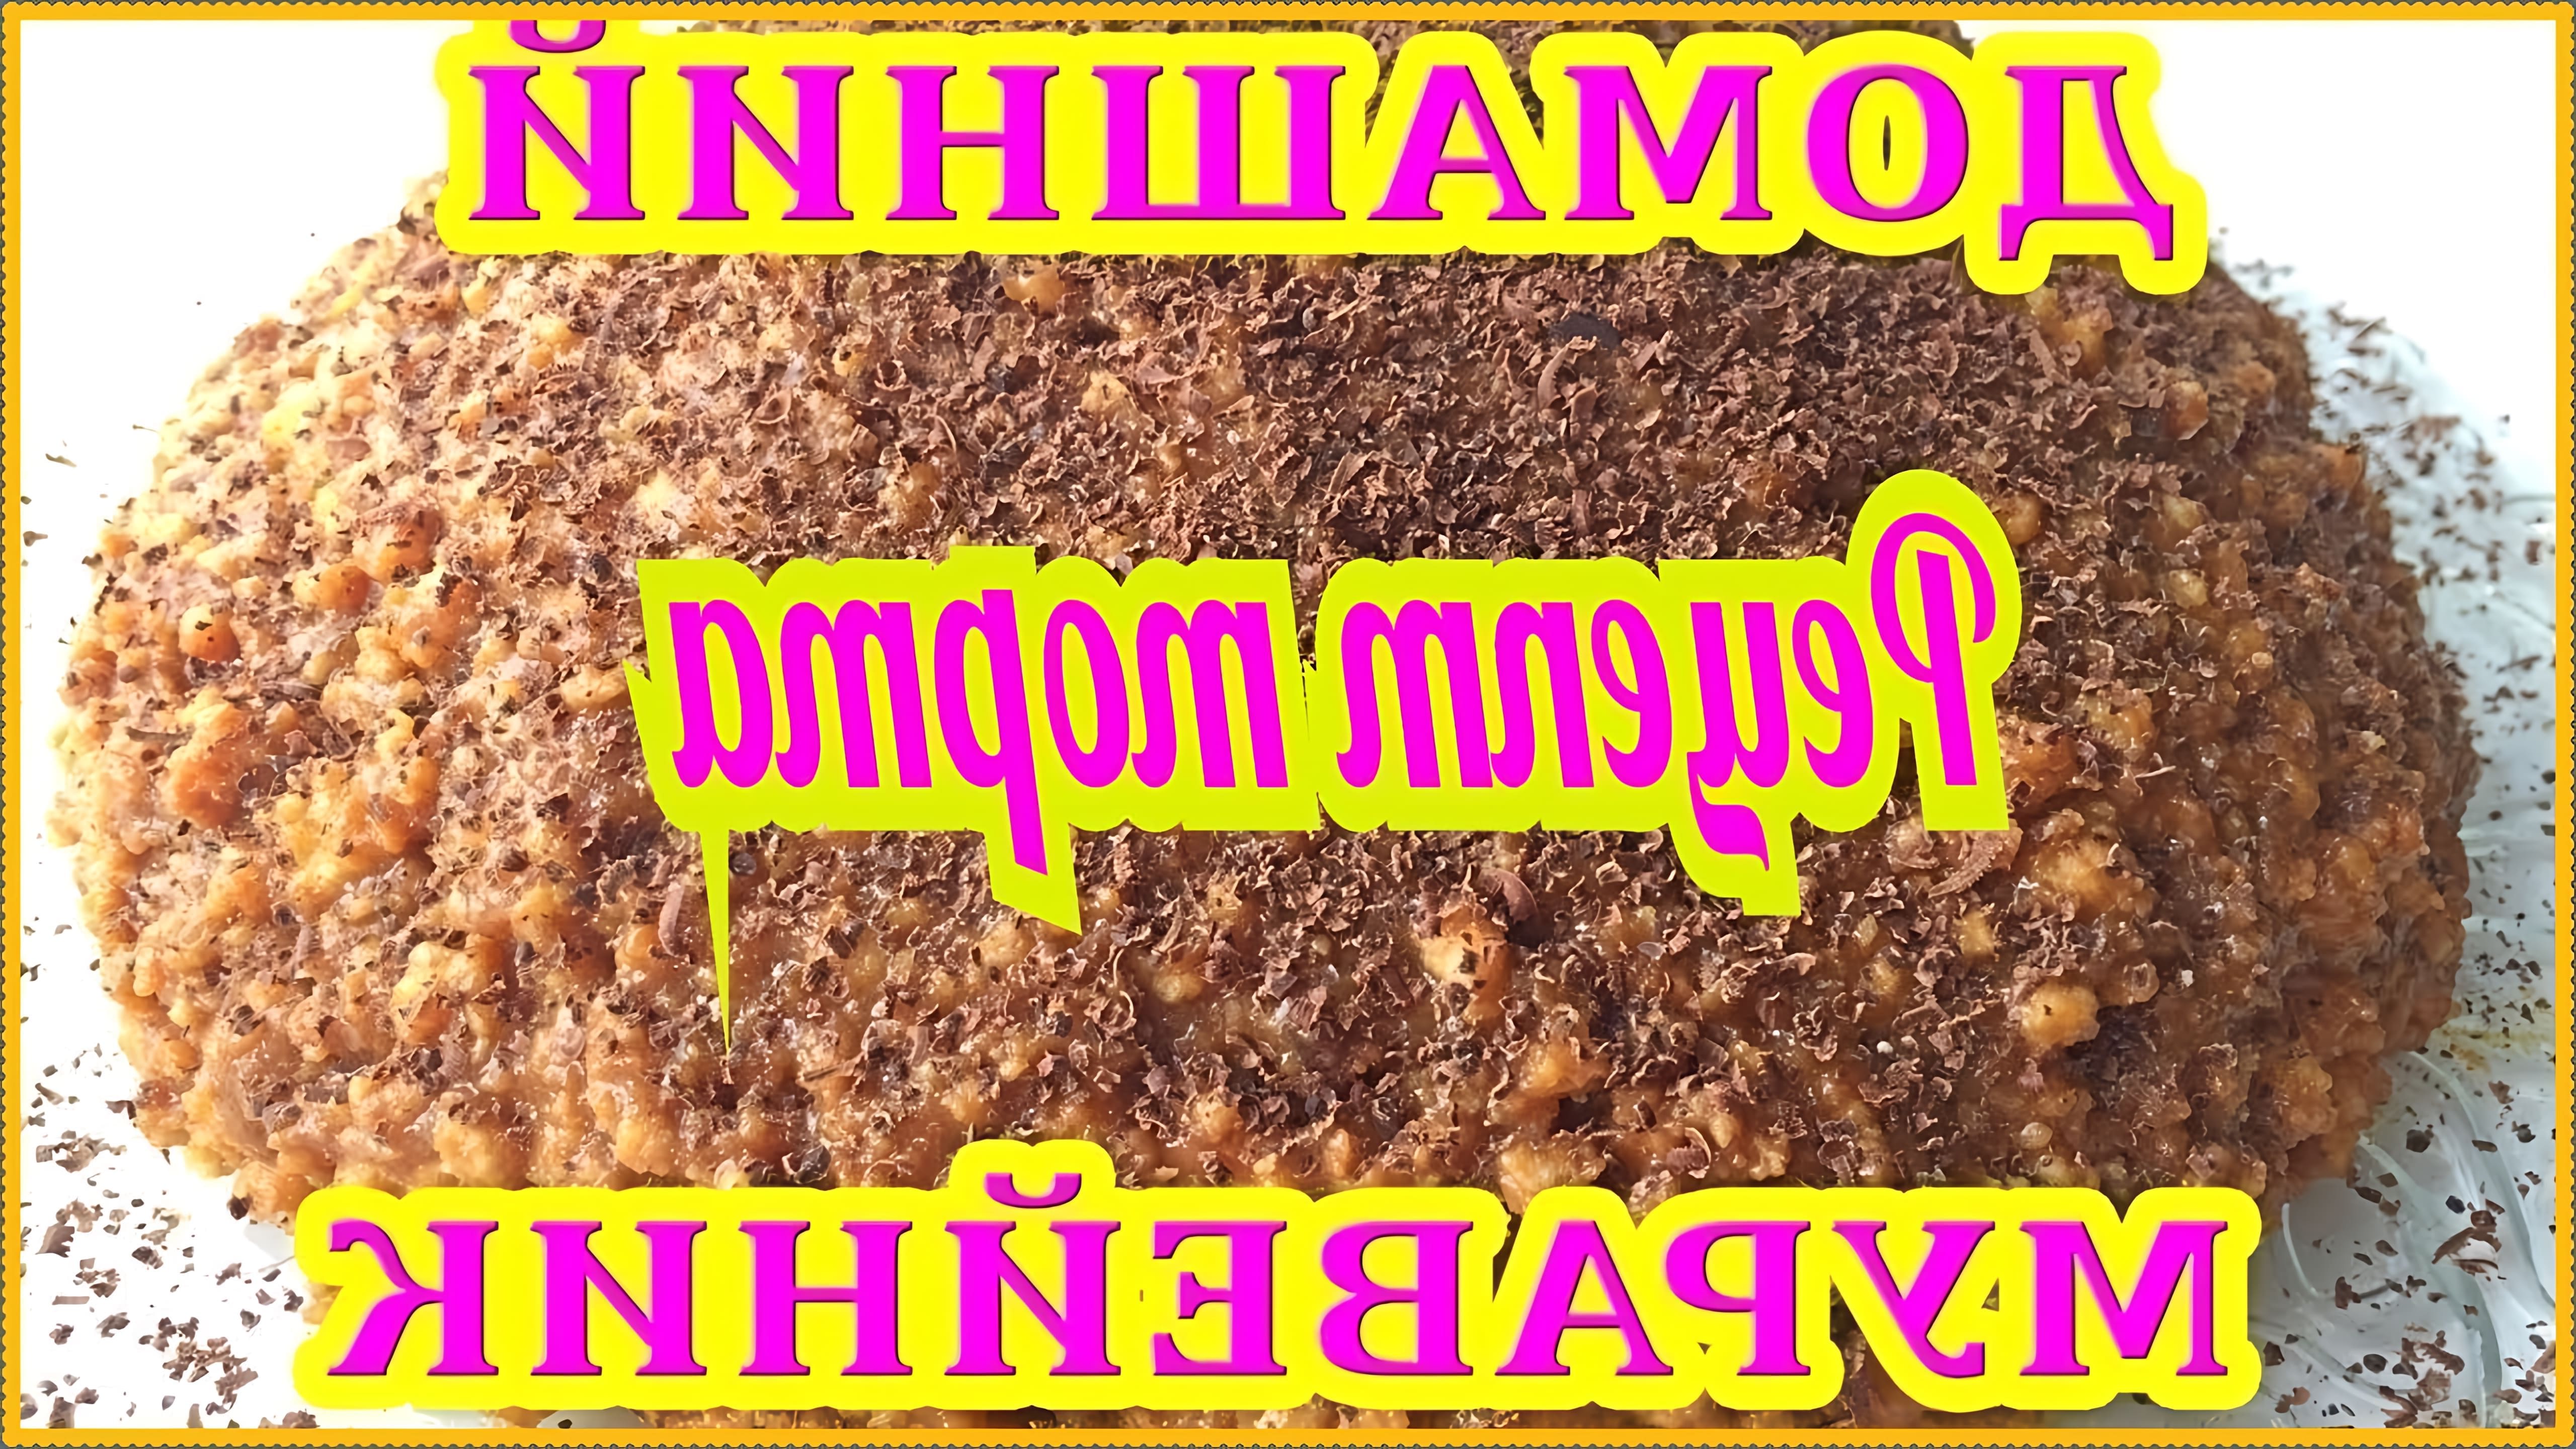 "Пошаговый рецепт муравейника" - это видео-ролик, который показывает, как приготовить вкусный десерт в виде муравейника